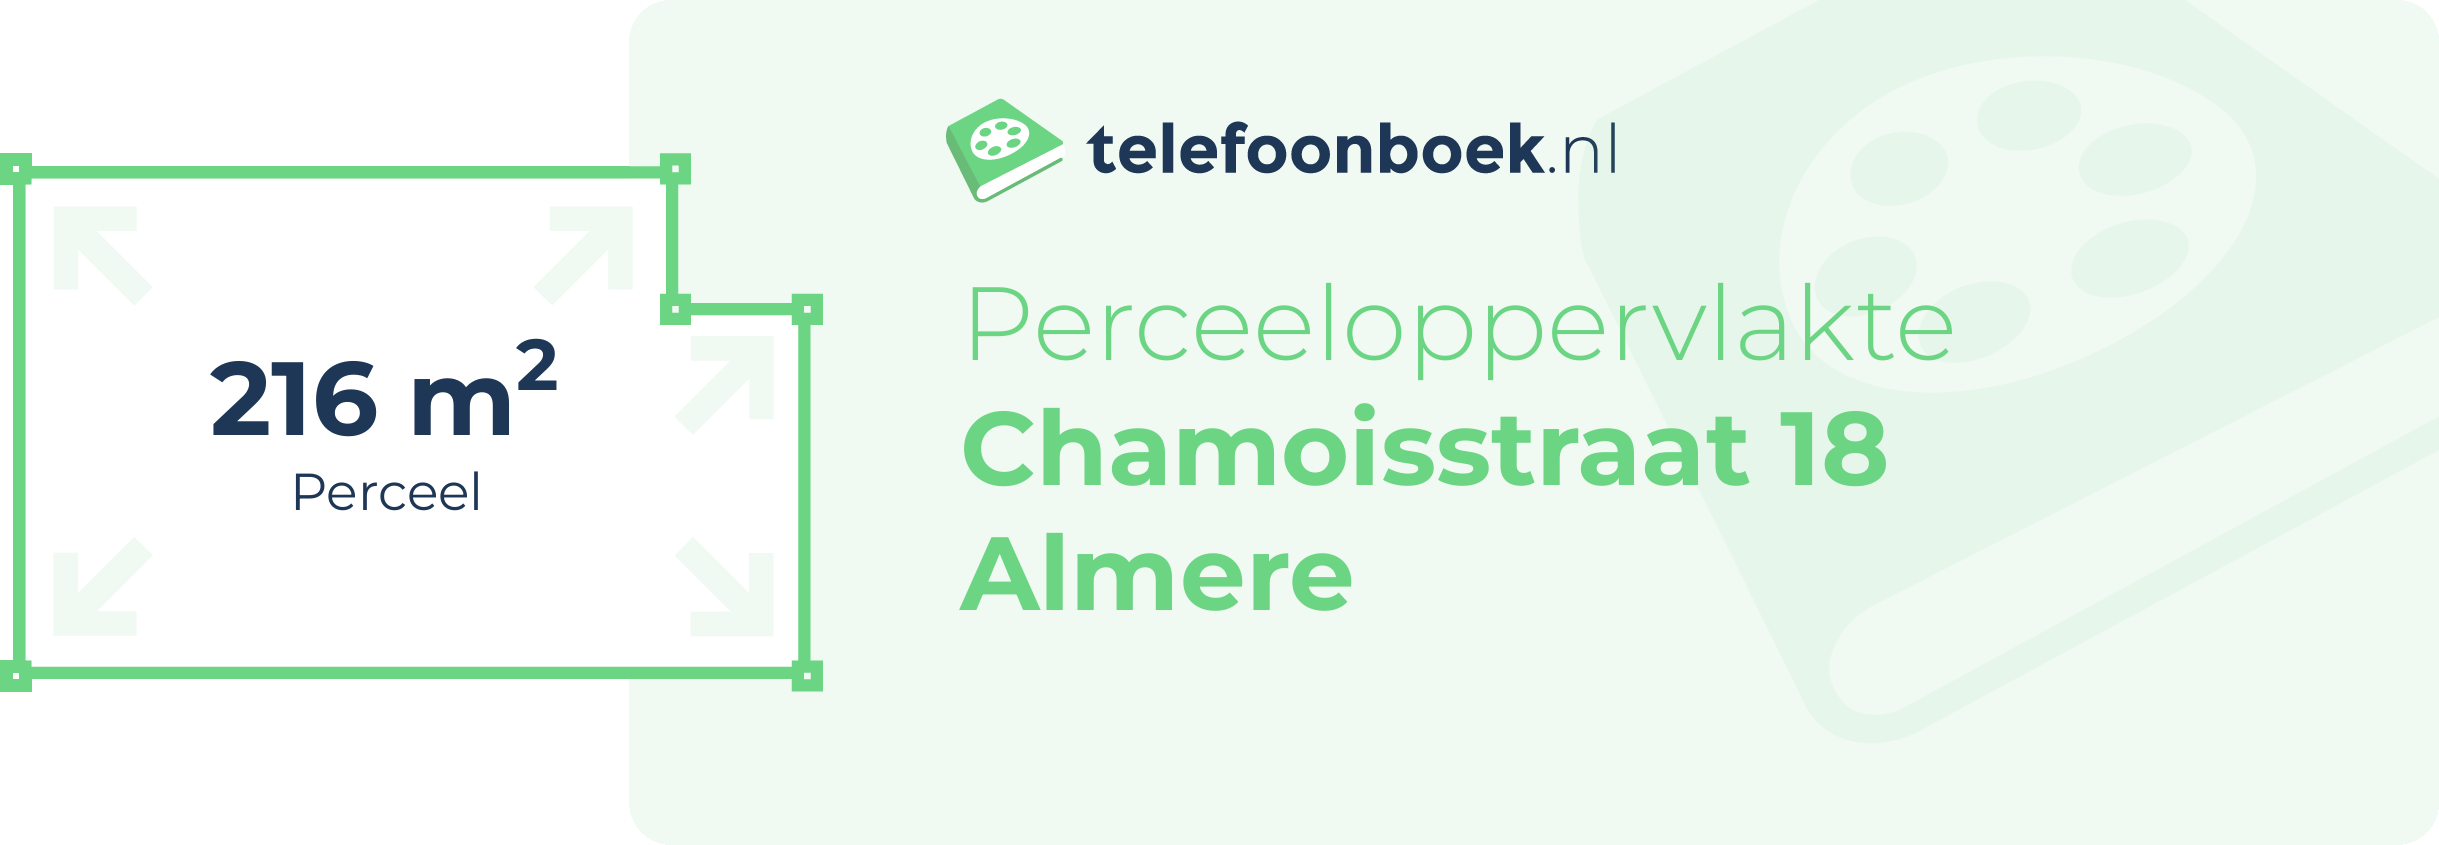 Perceeloppervlakte Chamoisstraat 18 Almere